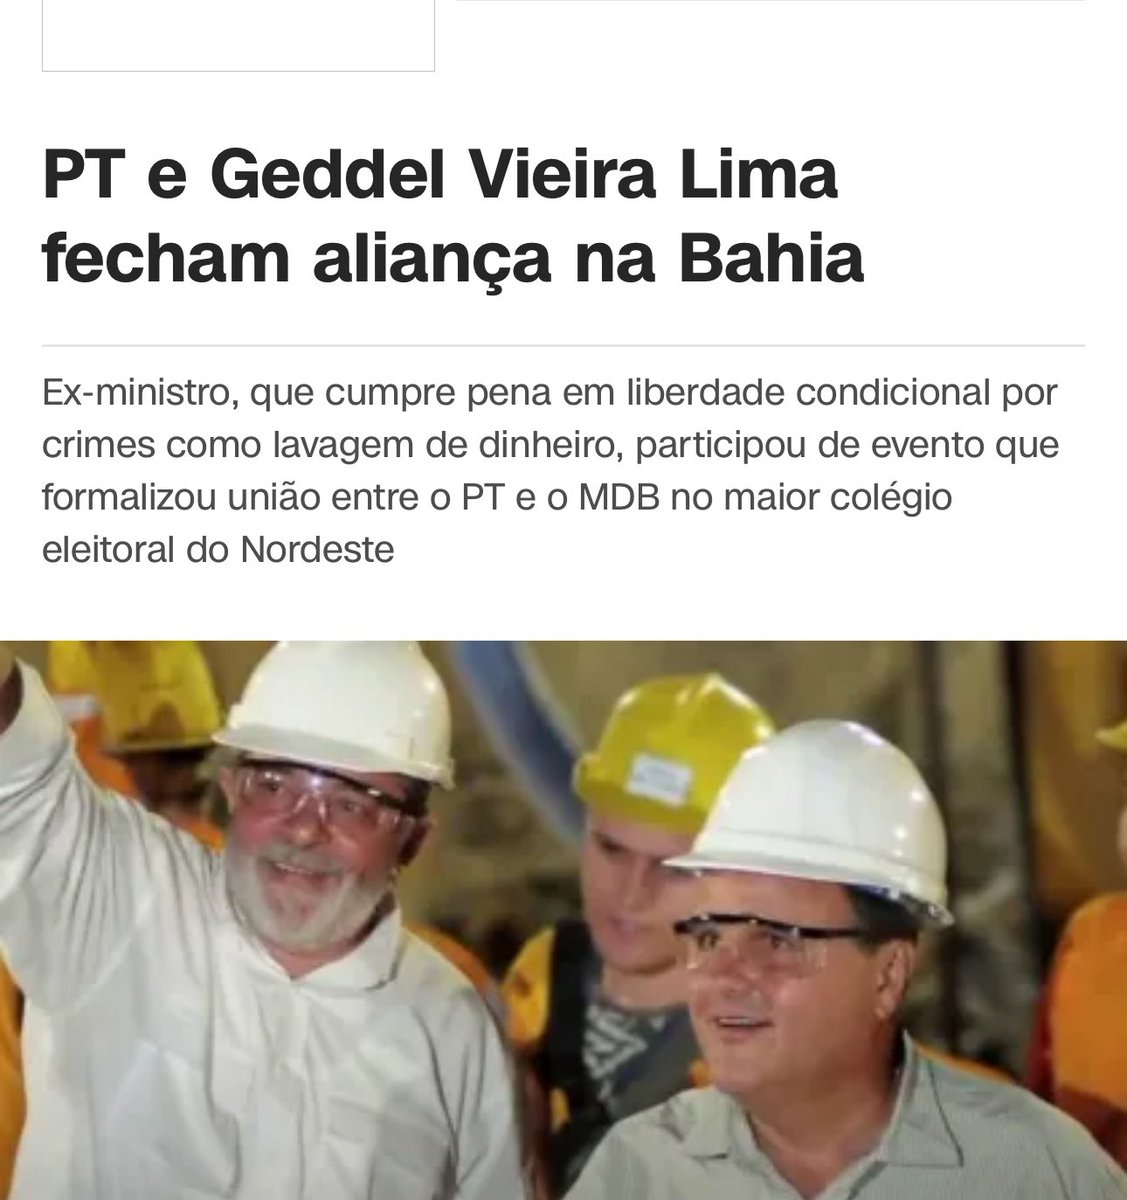 Isso não será considerado “atentado ao estado democrático de direito”. Geddel e Lula juntos na Bahia! 👍🏻